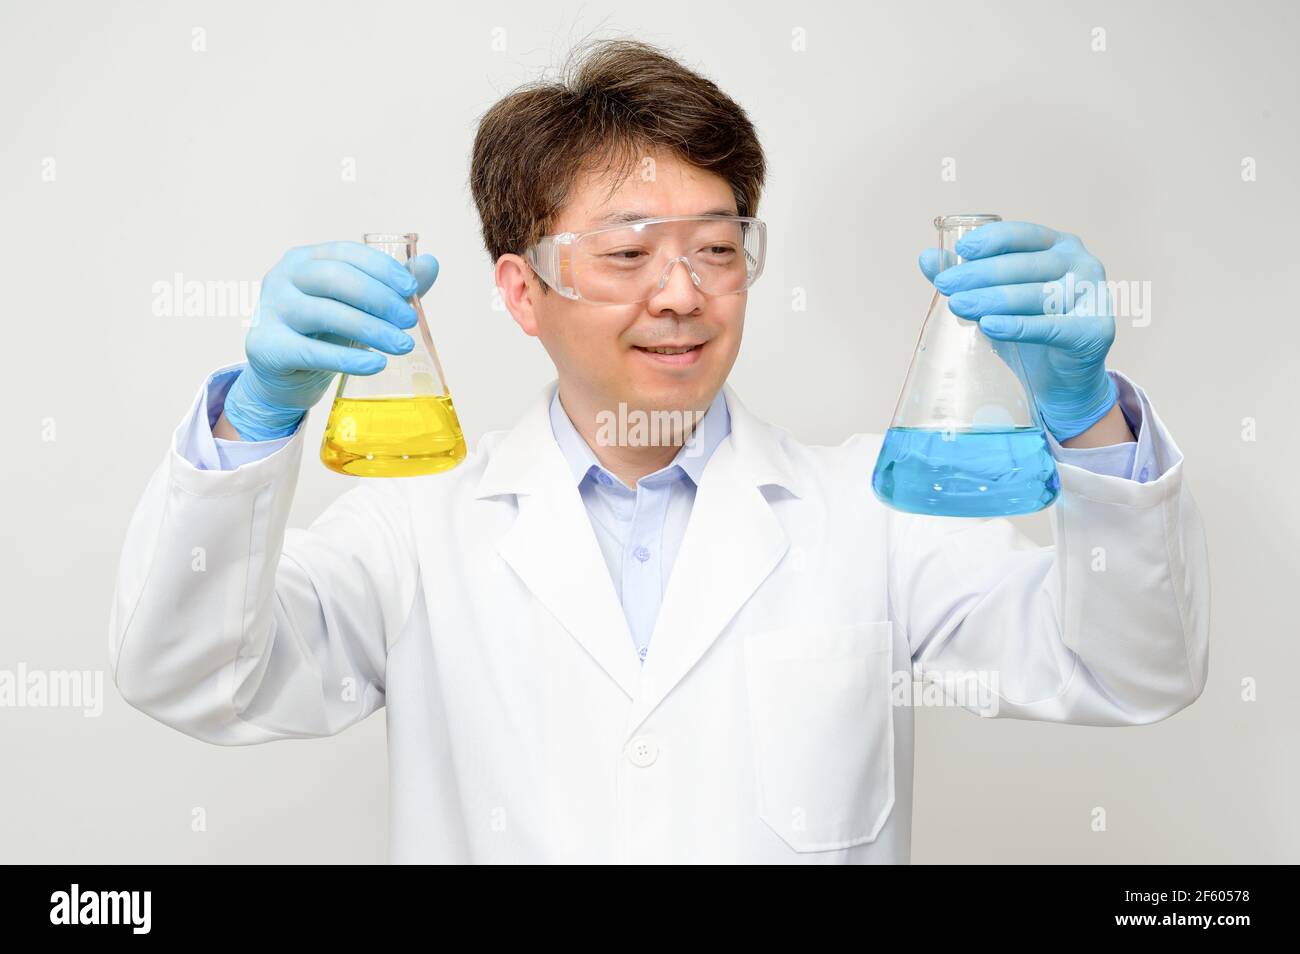 Porträt eines asiatischen Wissenschaftlers mit einem weißen Laborkleid und Handschuhen, der einen experimentellen Behälter in der Hand hält. Stockfoto